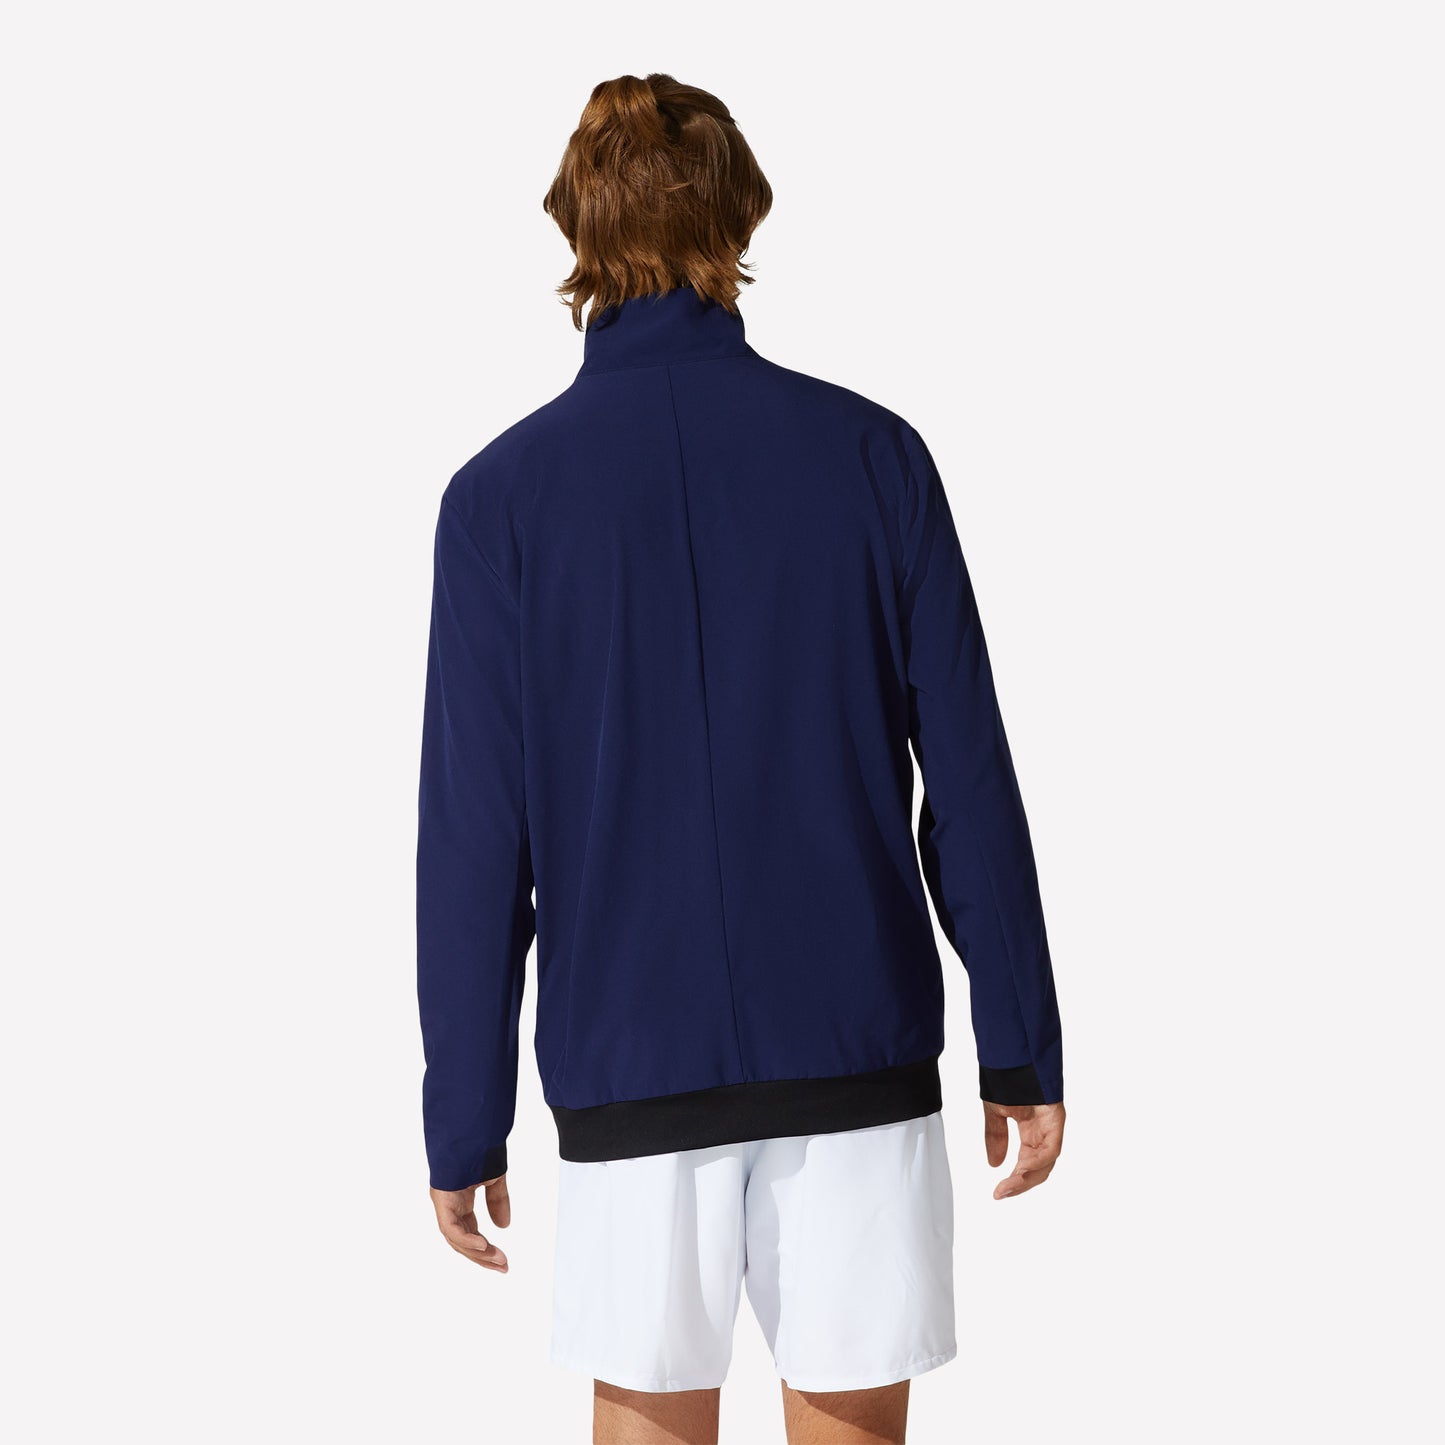 ASICS Match Men's Woven Tennis Jacket Blue (2)